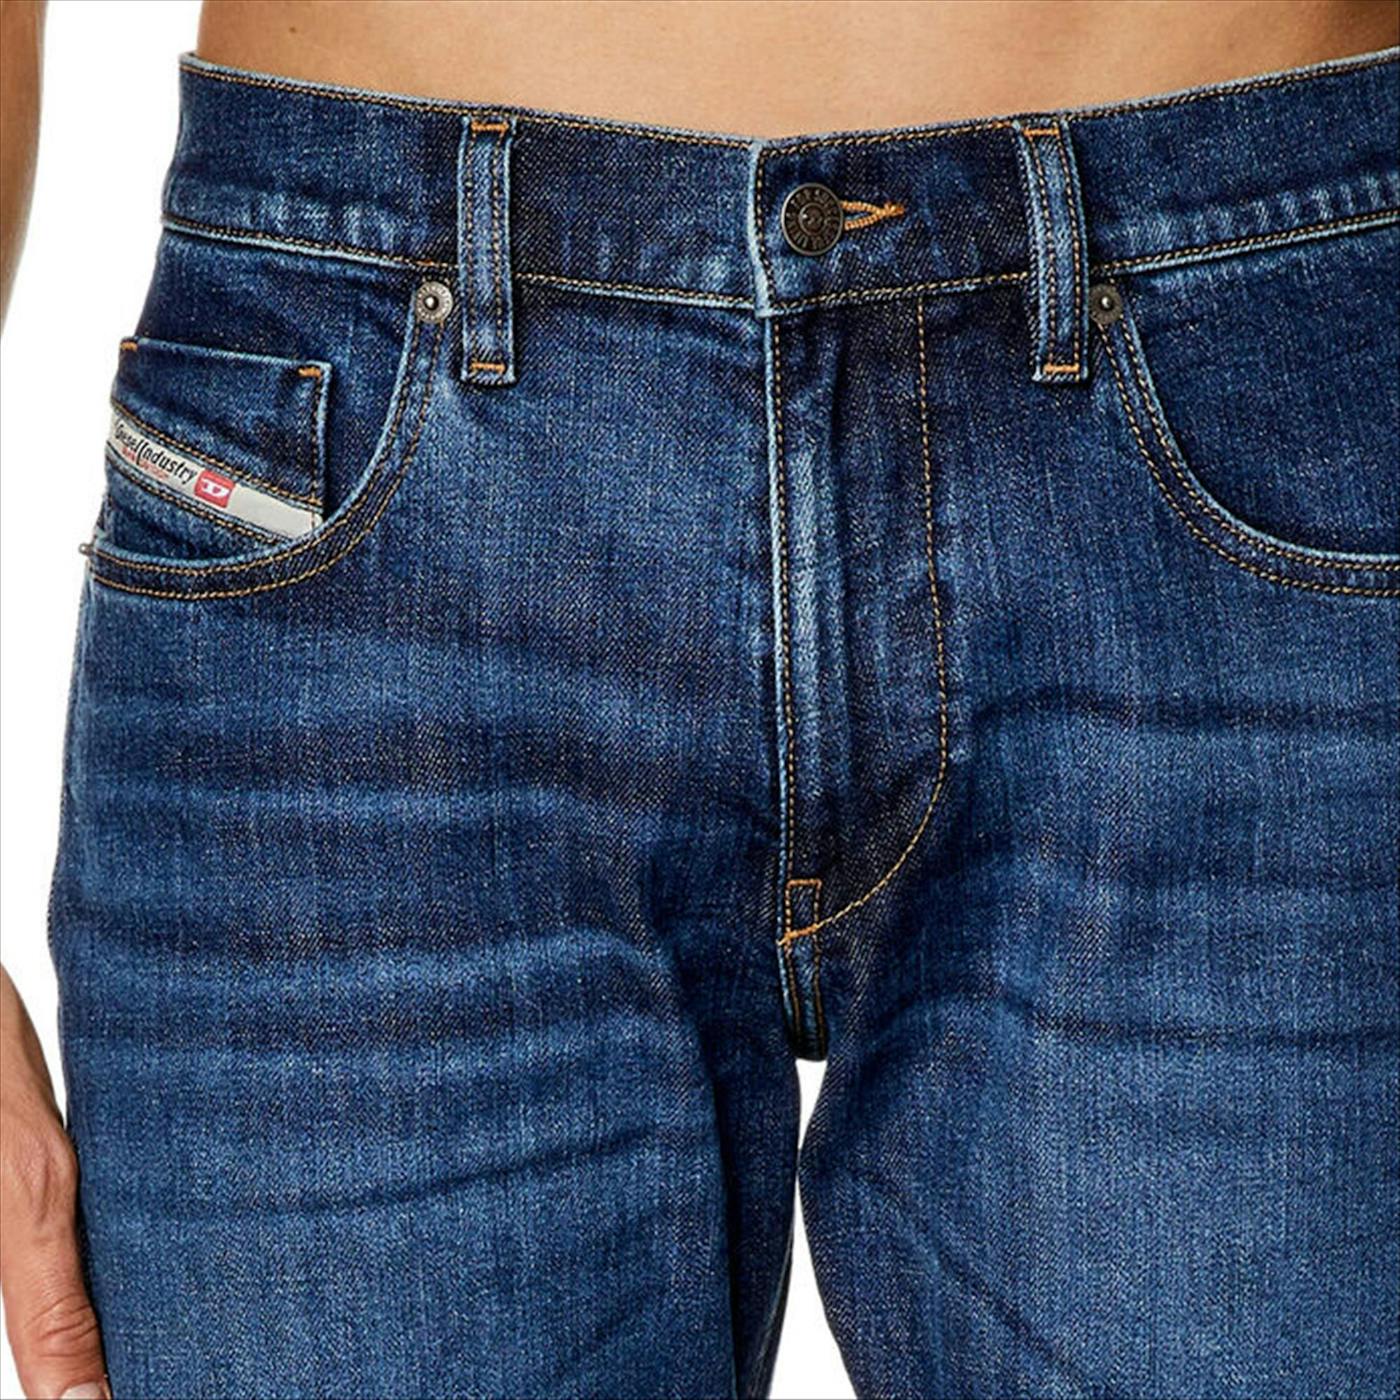 Diesel - Donkerblauwe Opfaz 2019 D-Strukt jeans